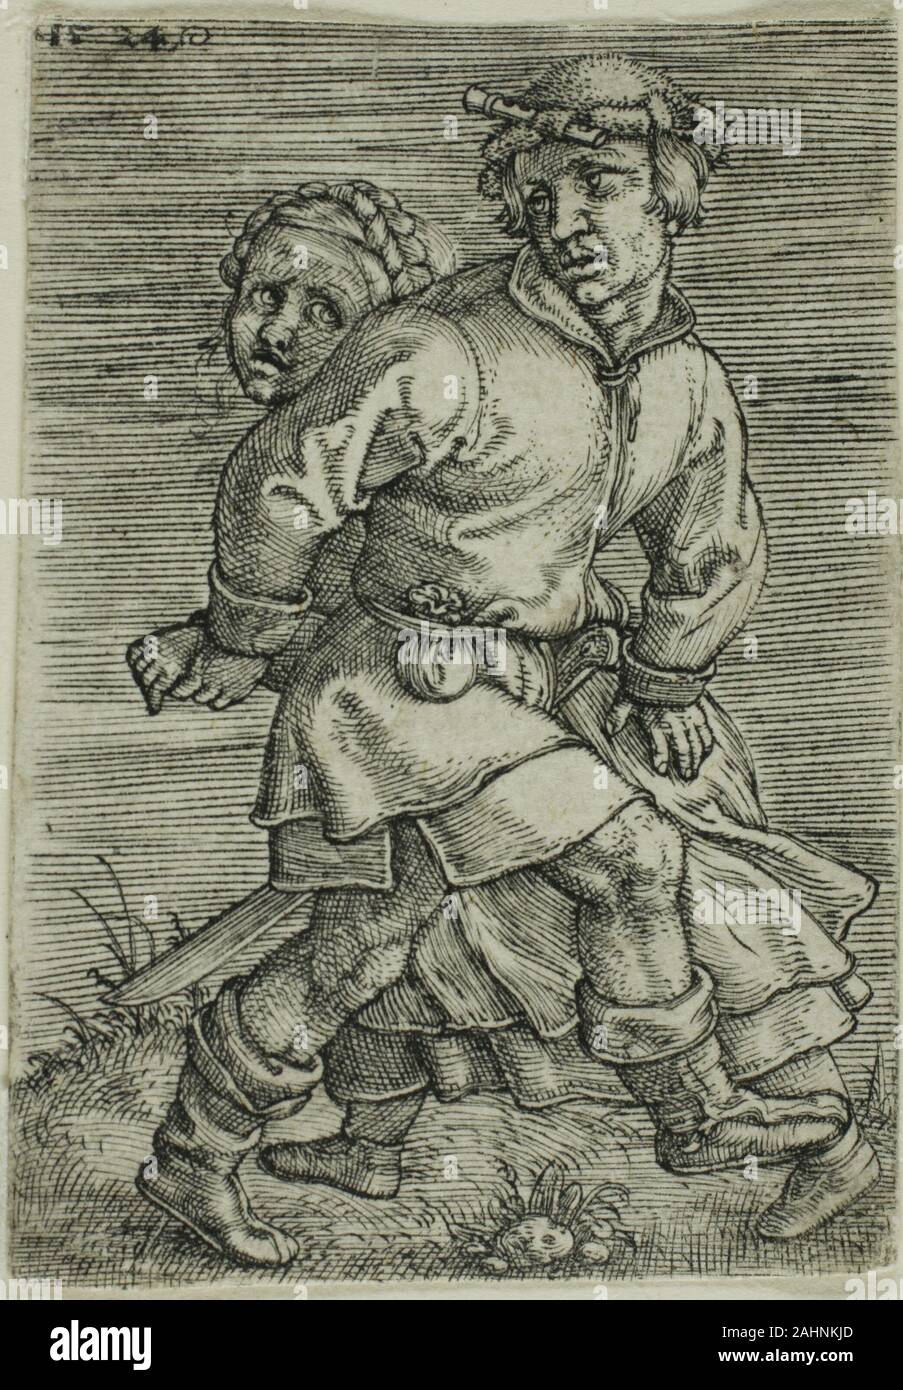 Barthel Beham. Contadino coppia danzante. 1524. Germania. Incisione in nero su avorio di cui la carta Foto Stock